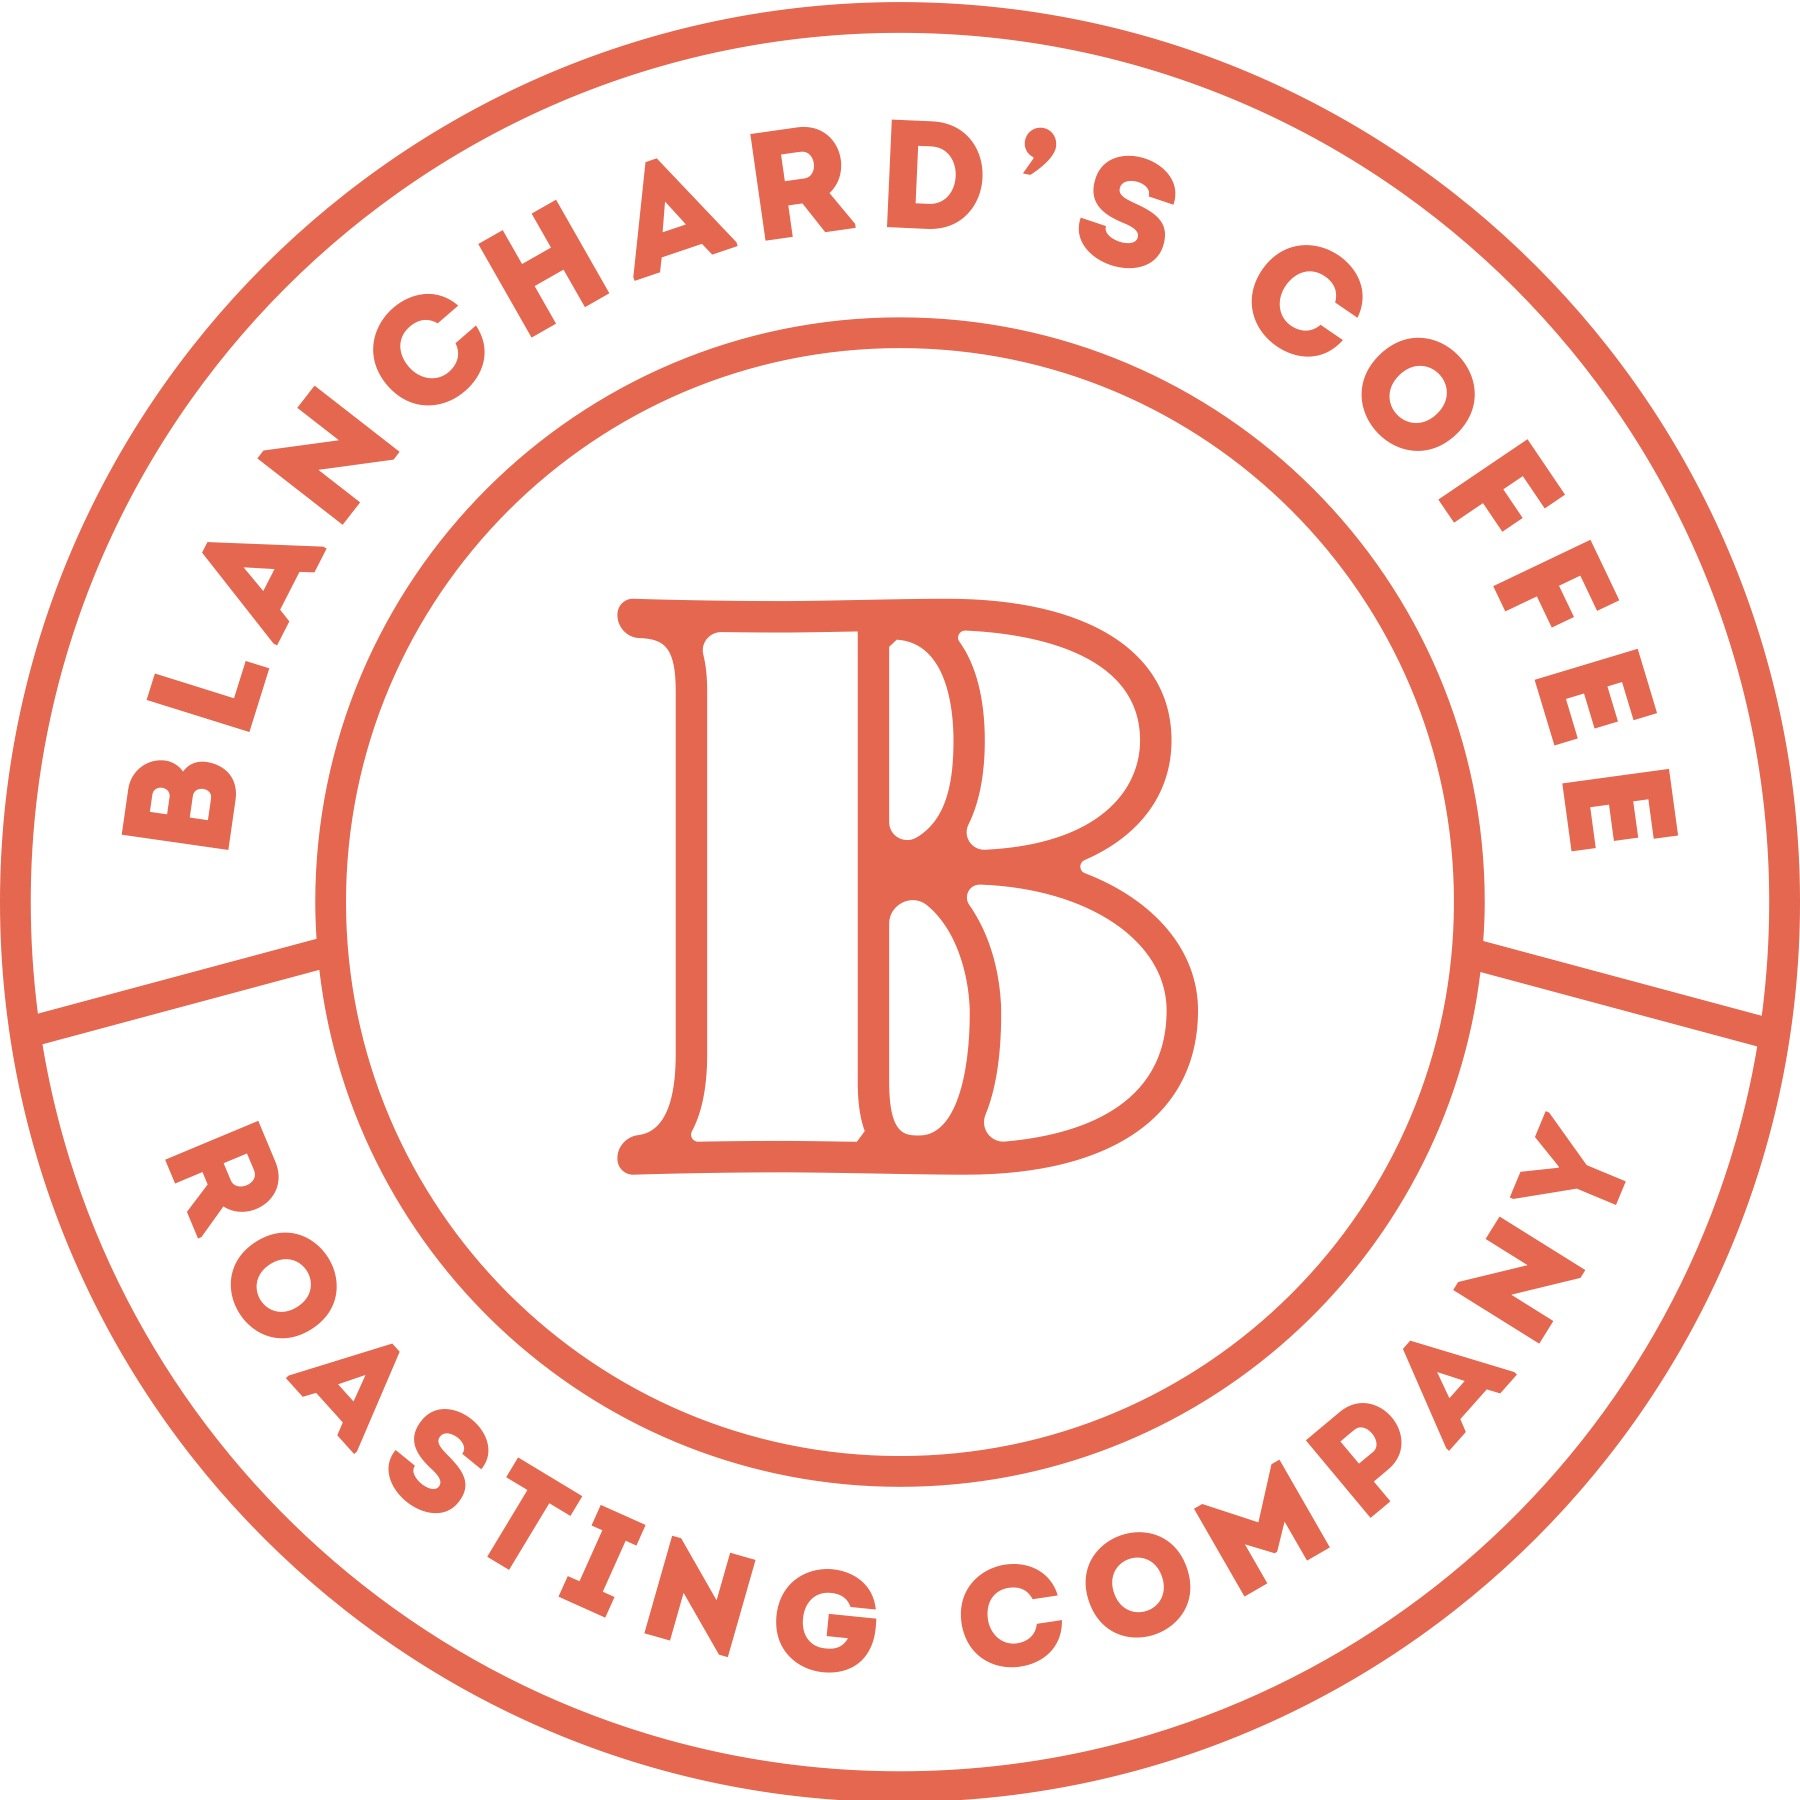 Blanchard's Coffee